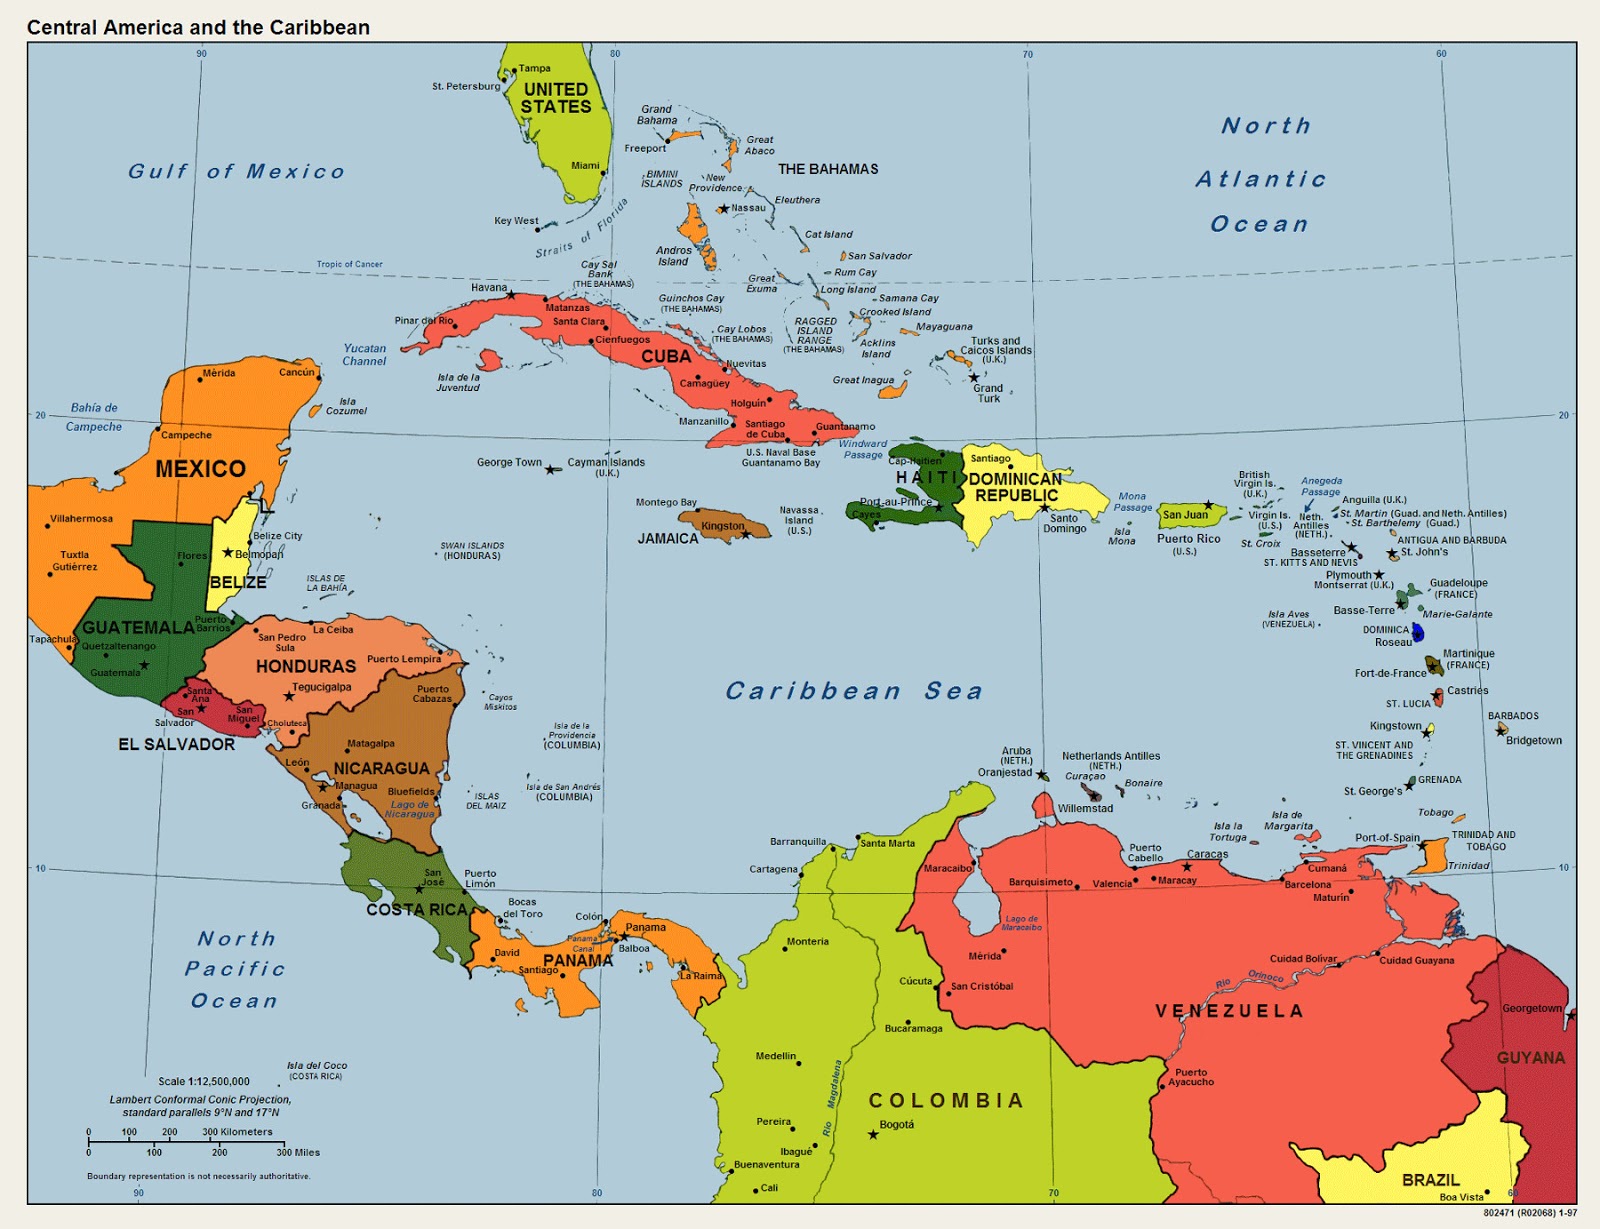 Mapa De America Central Y El Caribe Tamano Completo Gifex Images